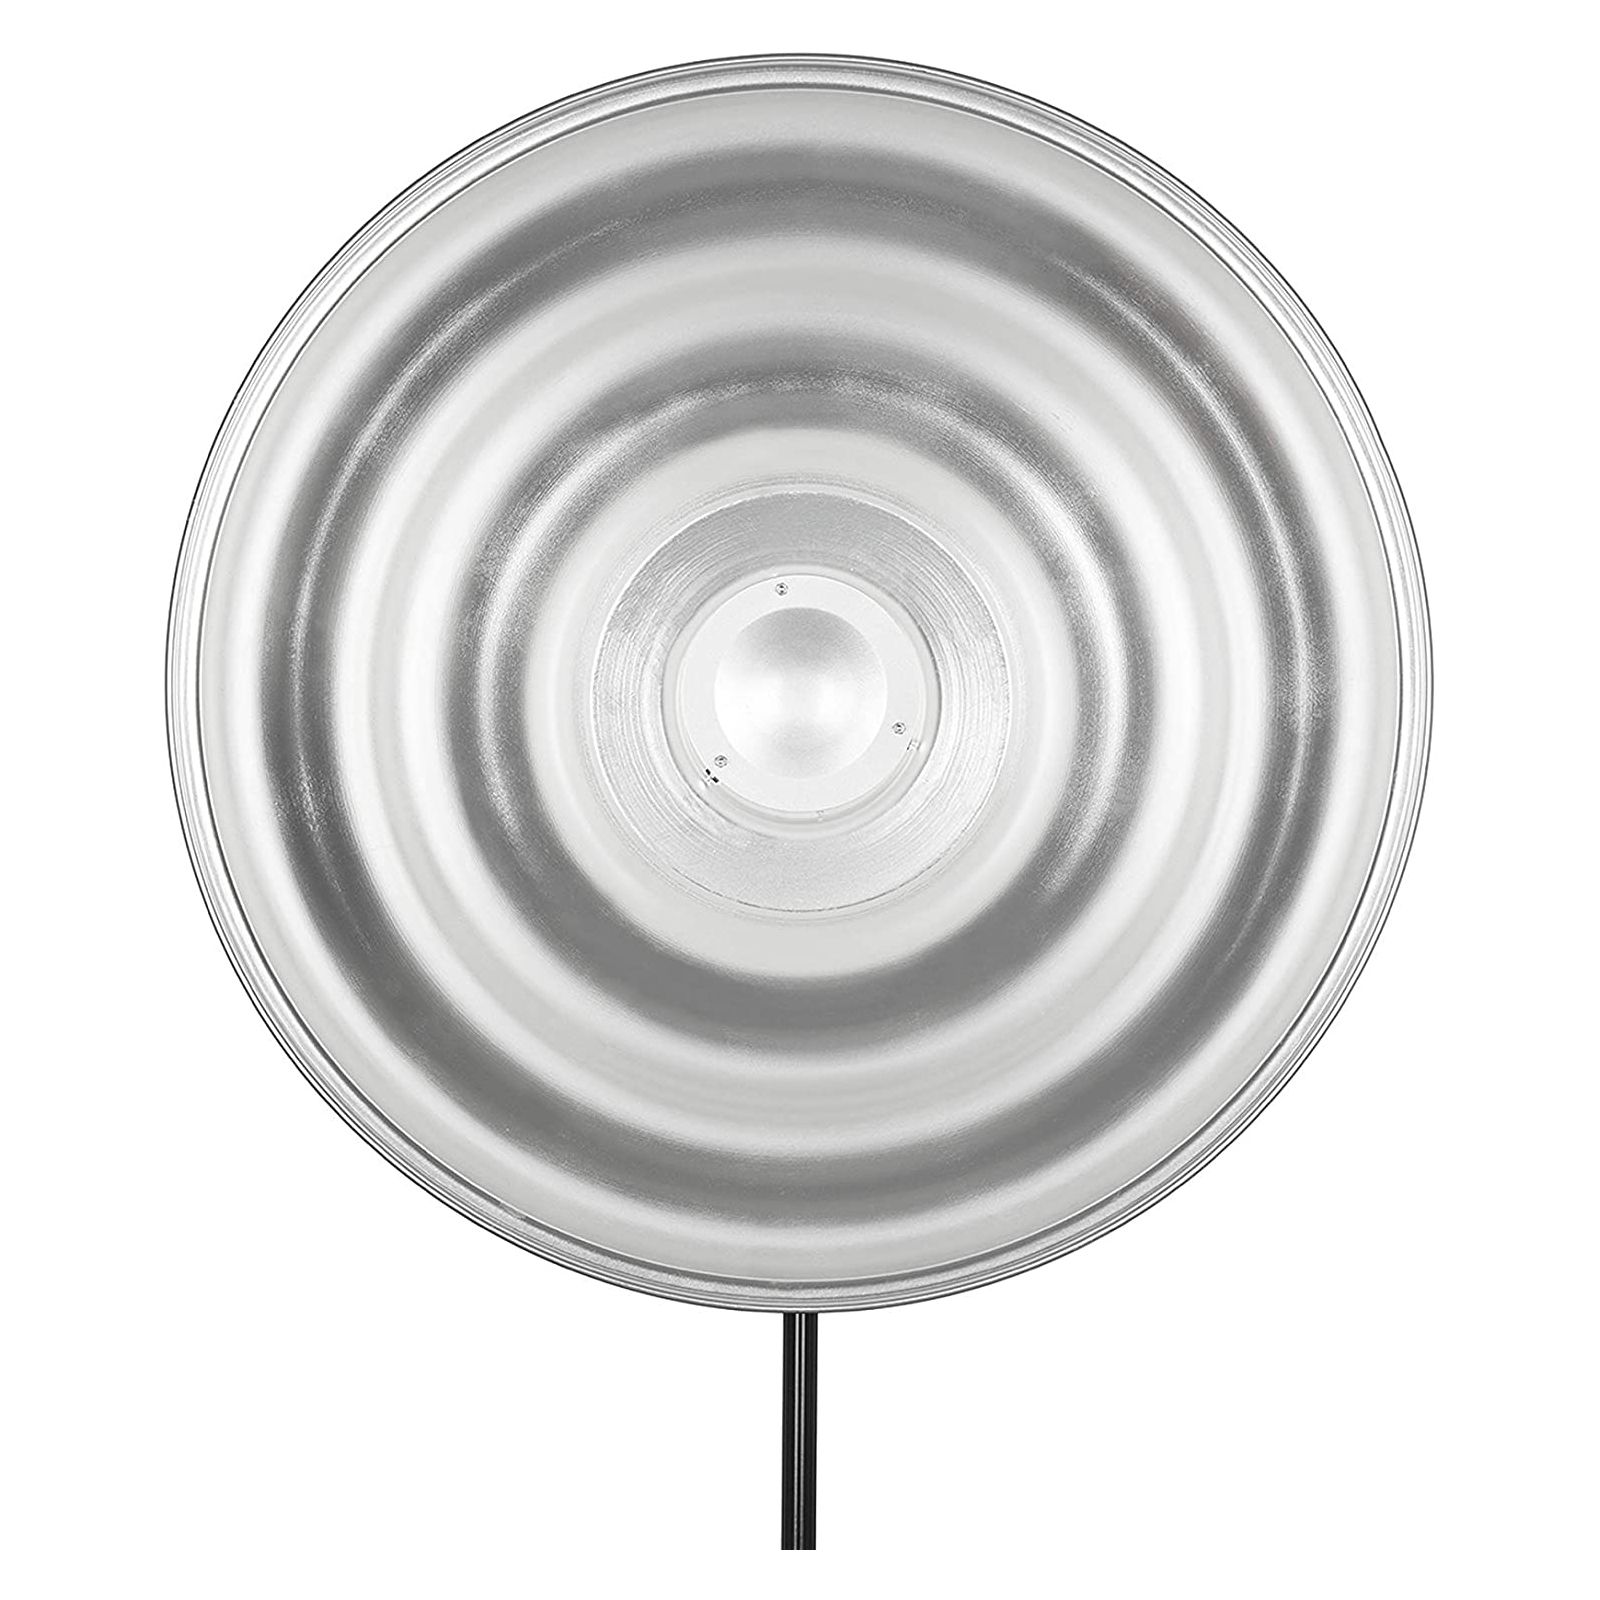 Bol beauté ondulé argenté 55 cm Quadralite Wave Beauty Dish Silver 55 cm réflecteur Photo Studio Shooting Portrait Mode 